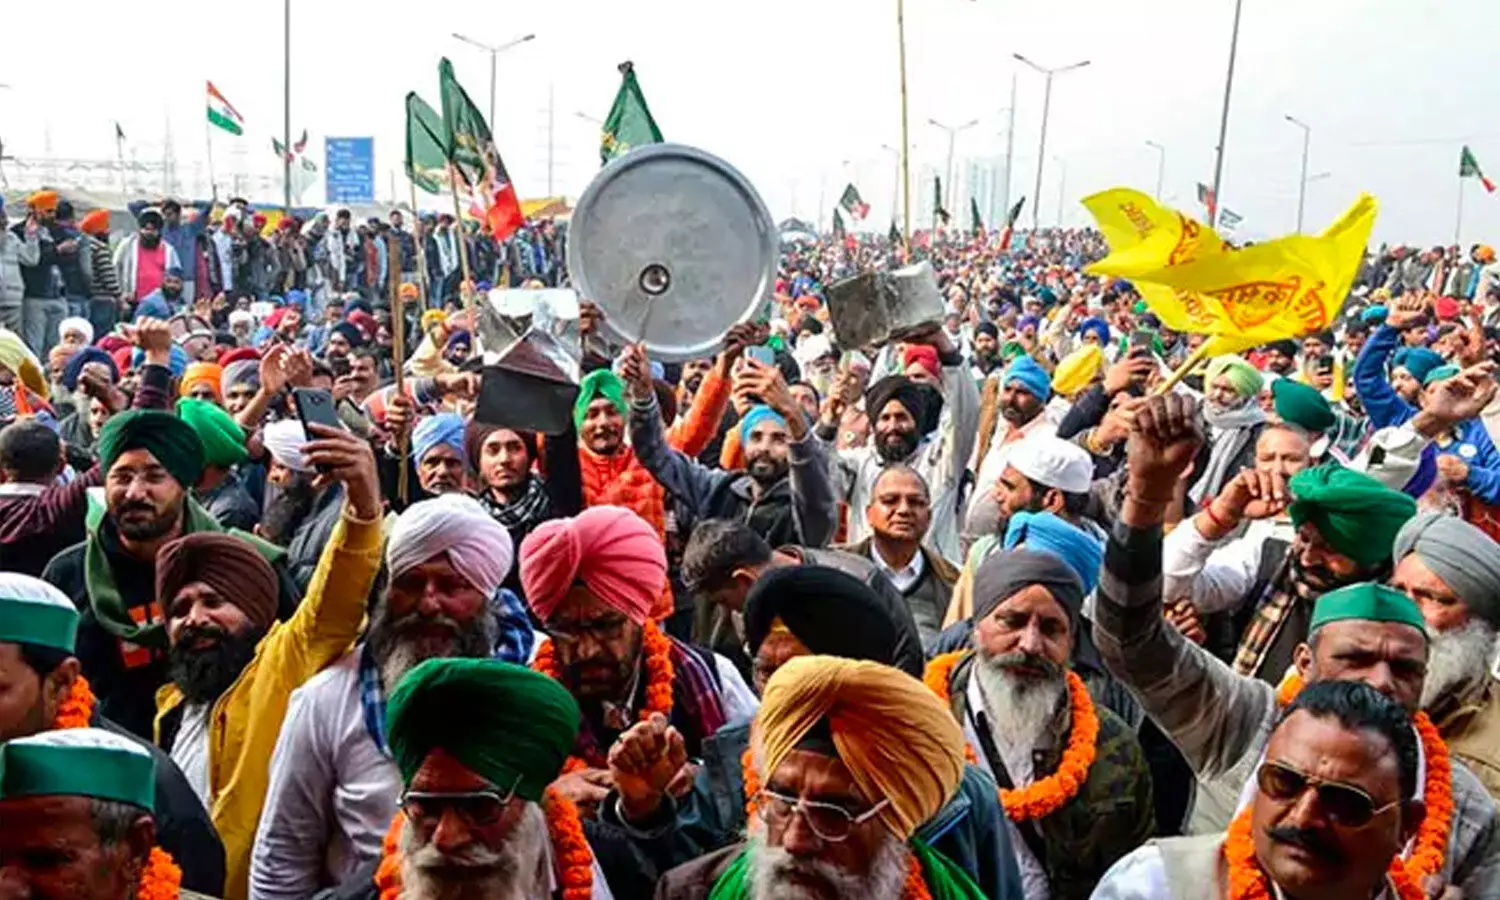 Kisan Protests: Delhi farmers protest march in Delhi